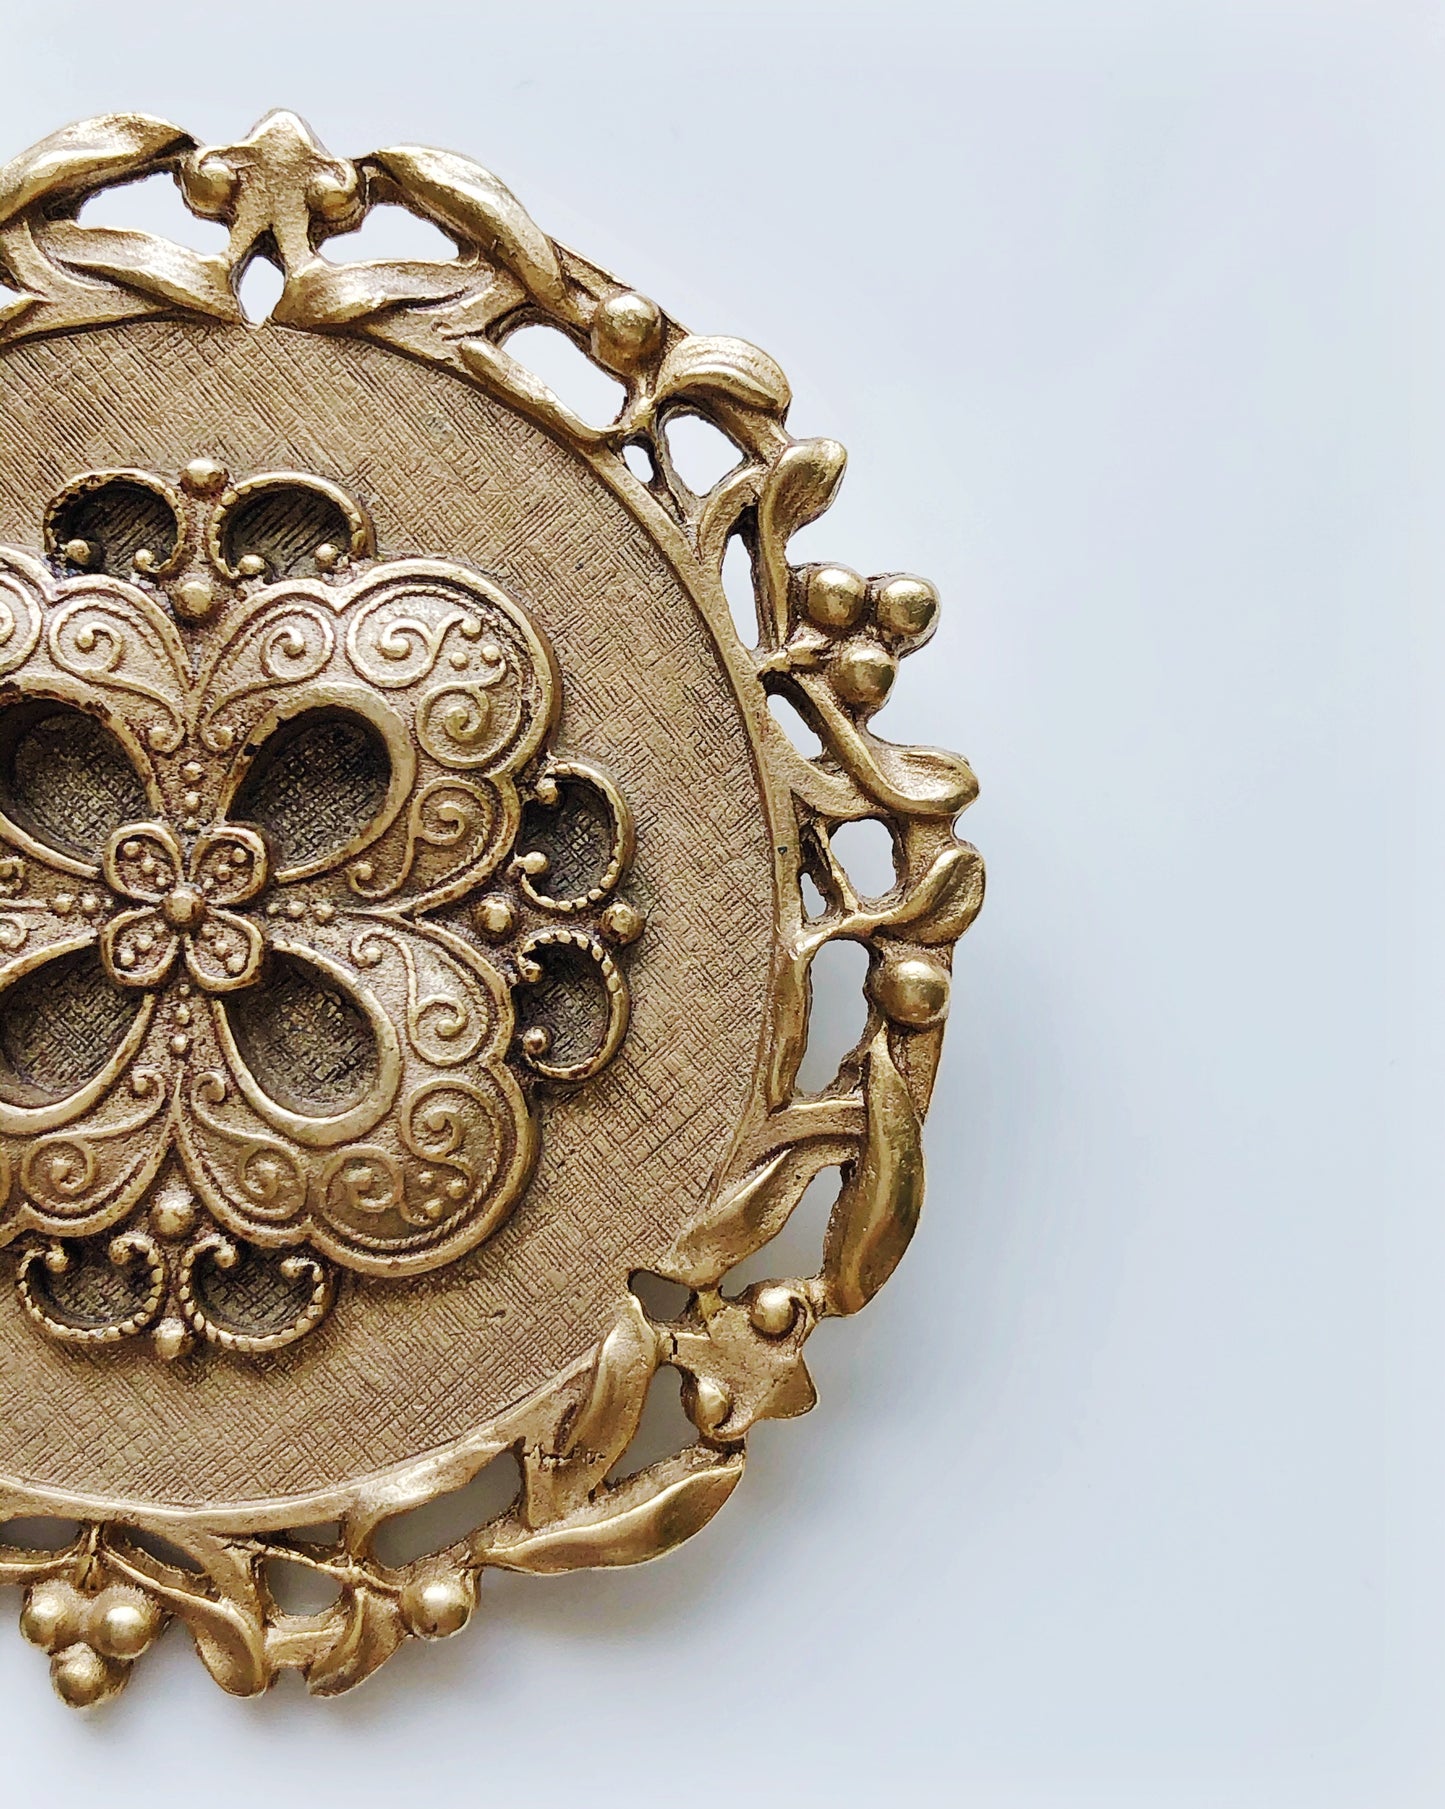 Vintage Victorian inspired pressed metal pearl brooch